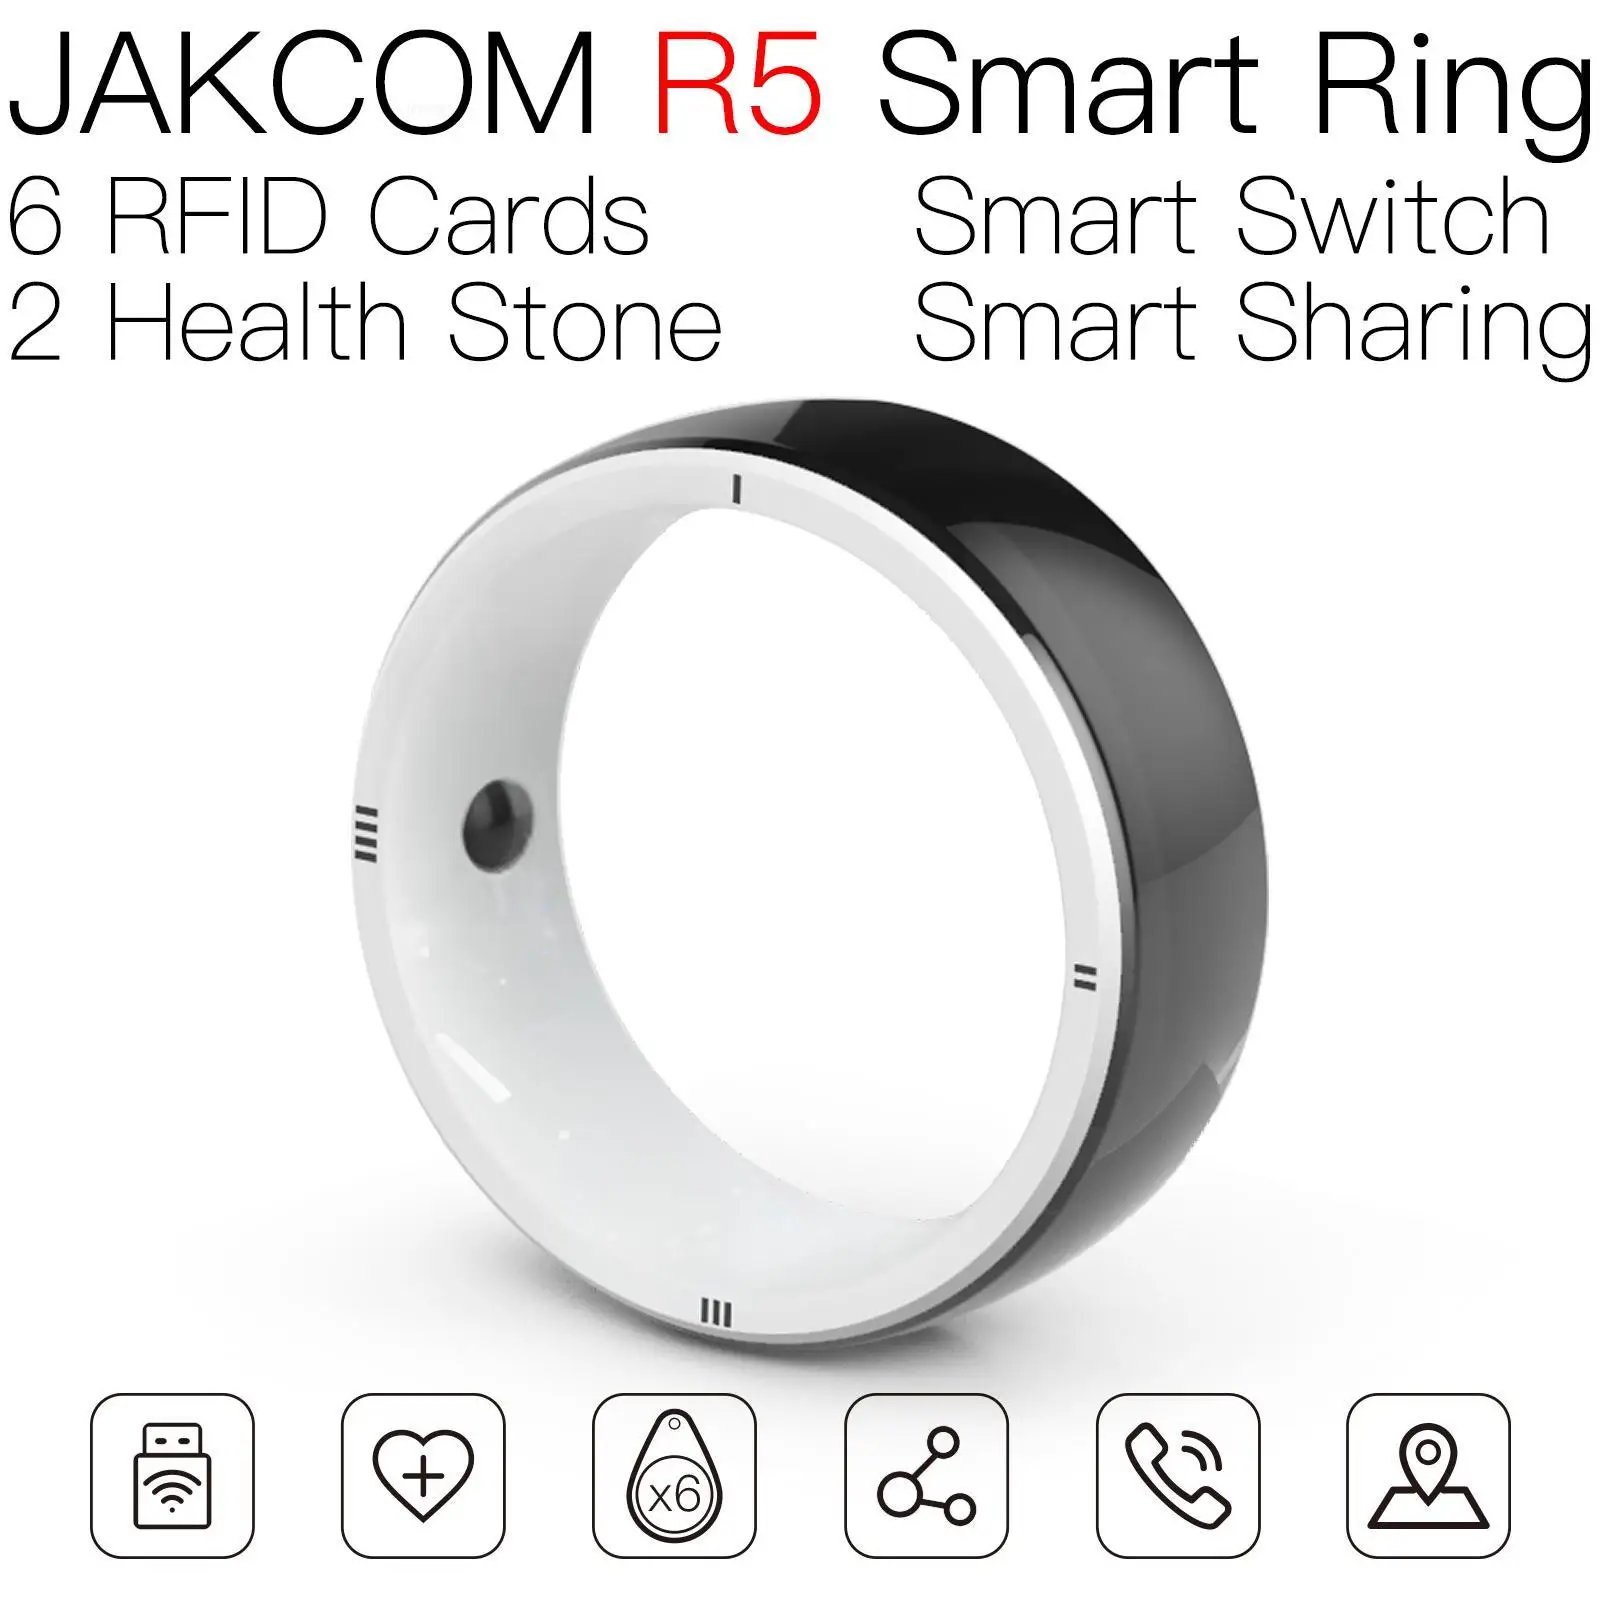 

Умное кольцо JAKCOM R5, соответствует стандартам, android, считыватель id кота, белая карта, новый пользовательский бонус, стикер для ключа tt, Блокировка петли